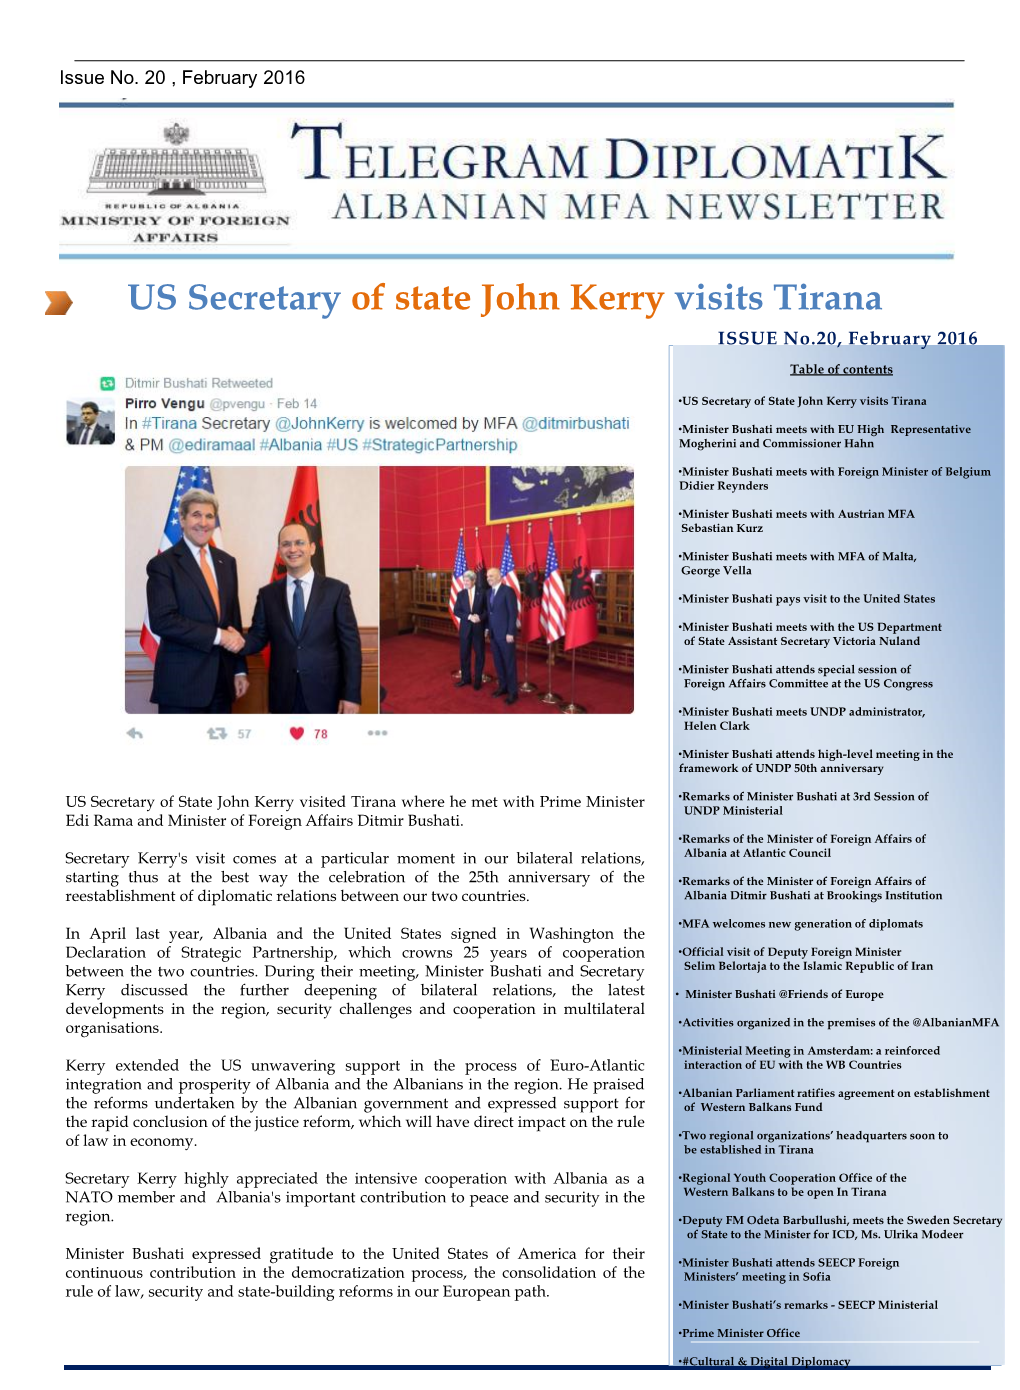 US Secretary of State John Kerry Visits Tirana ISSUE No.20, February 2016